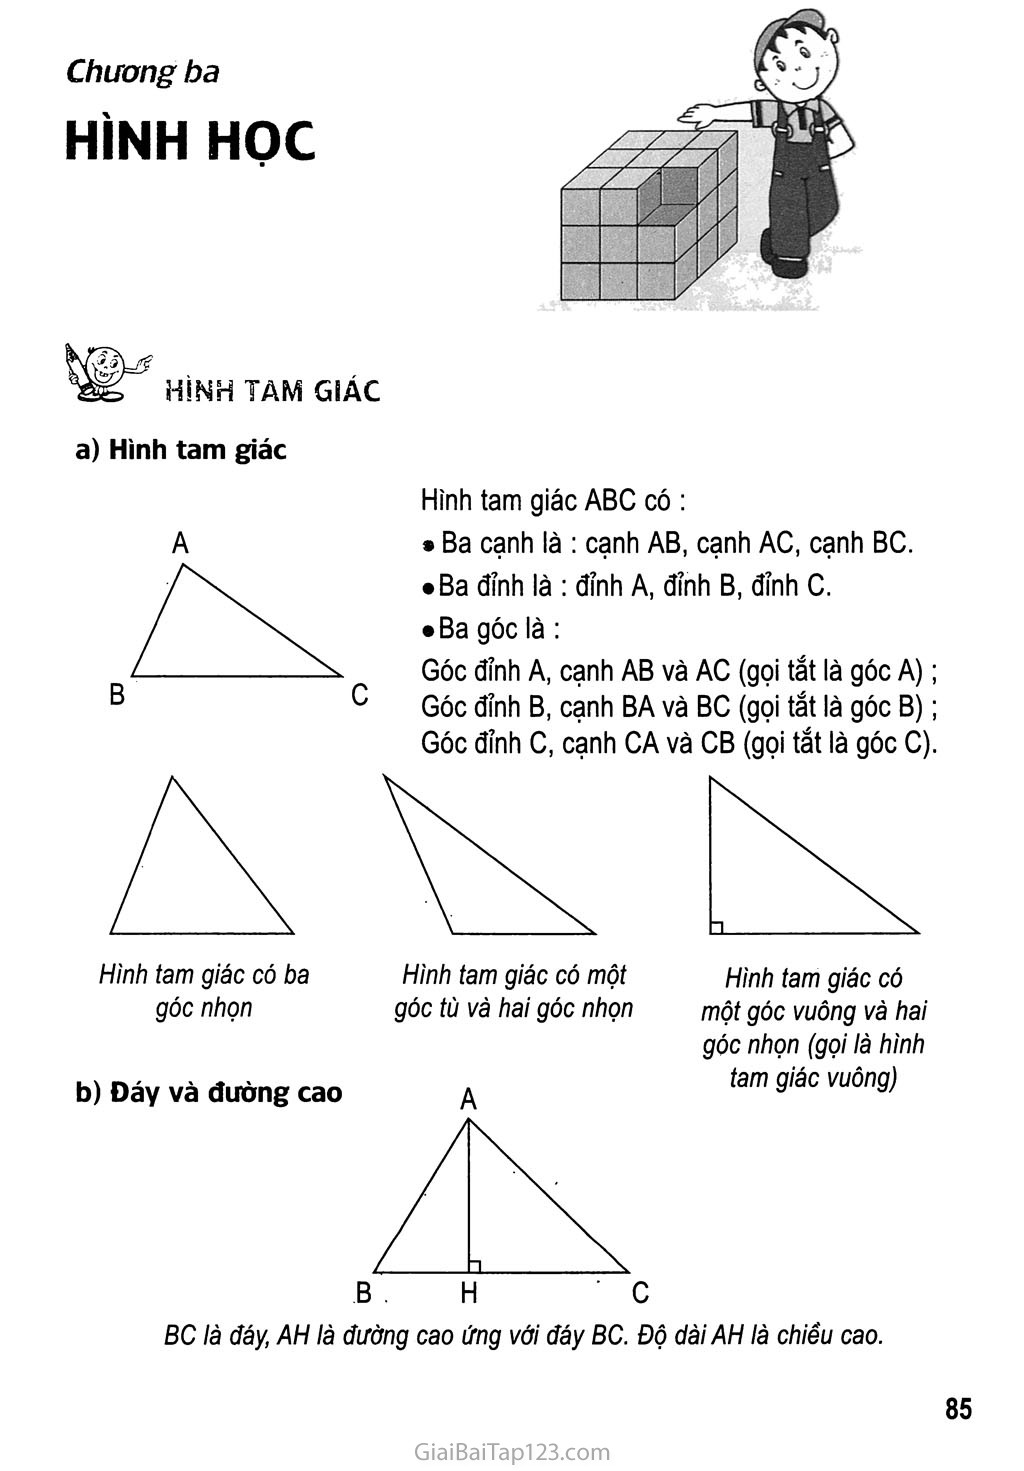 Hình tam giác trang 1